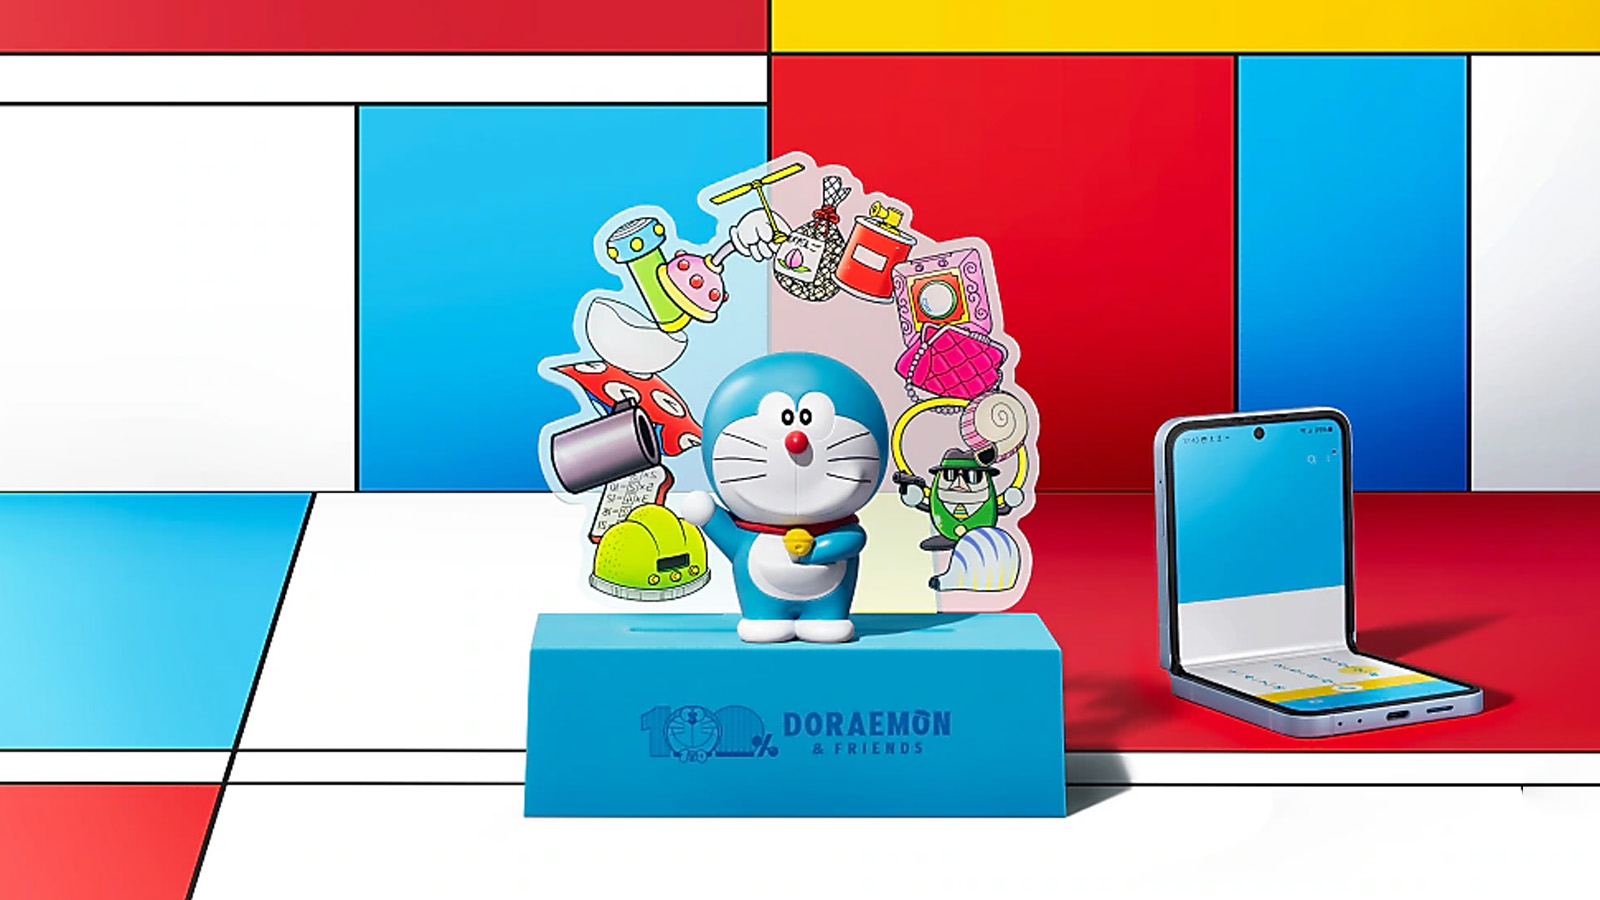 Bộ sản phẩm còn bao gồm đế dựng điện thoại in hình Doraemon với thiết kế nam châm tiện lợi, giúp bạn dễ dàng đặt điện thoại ở mọi góc độ (Ảnh: Internet)